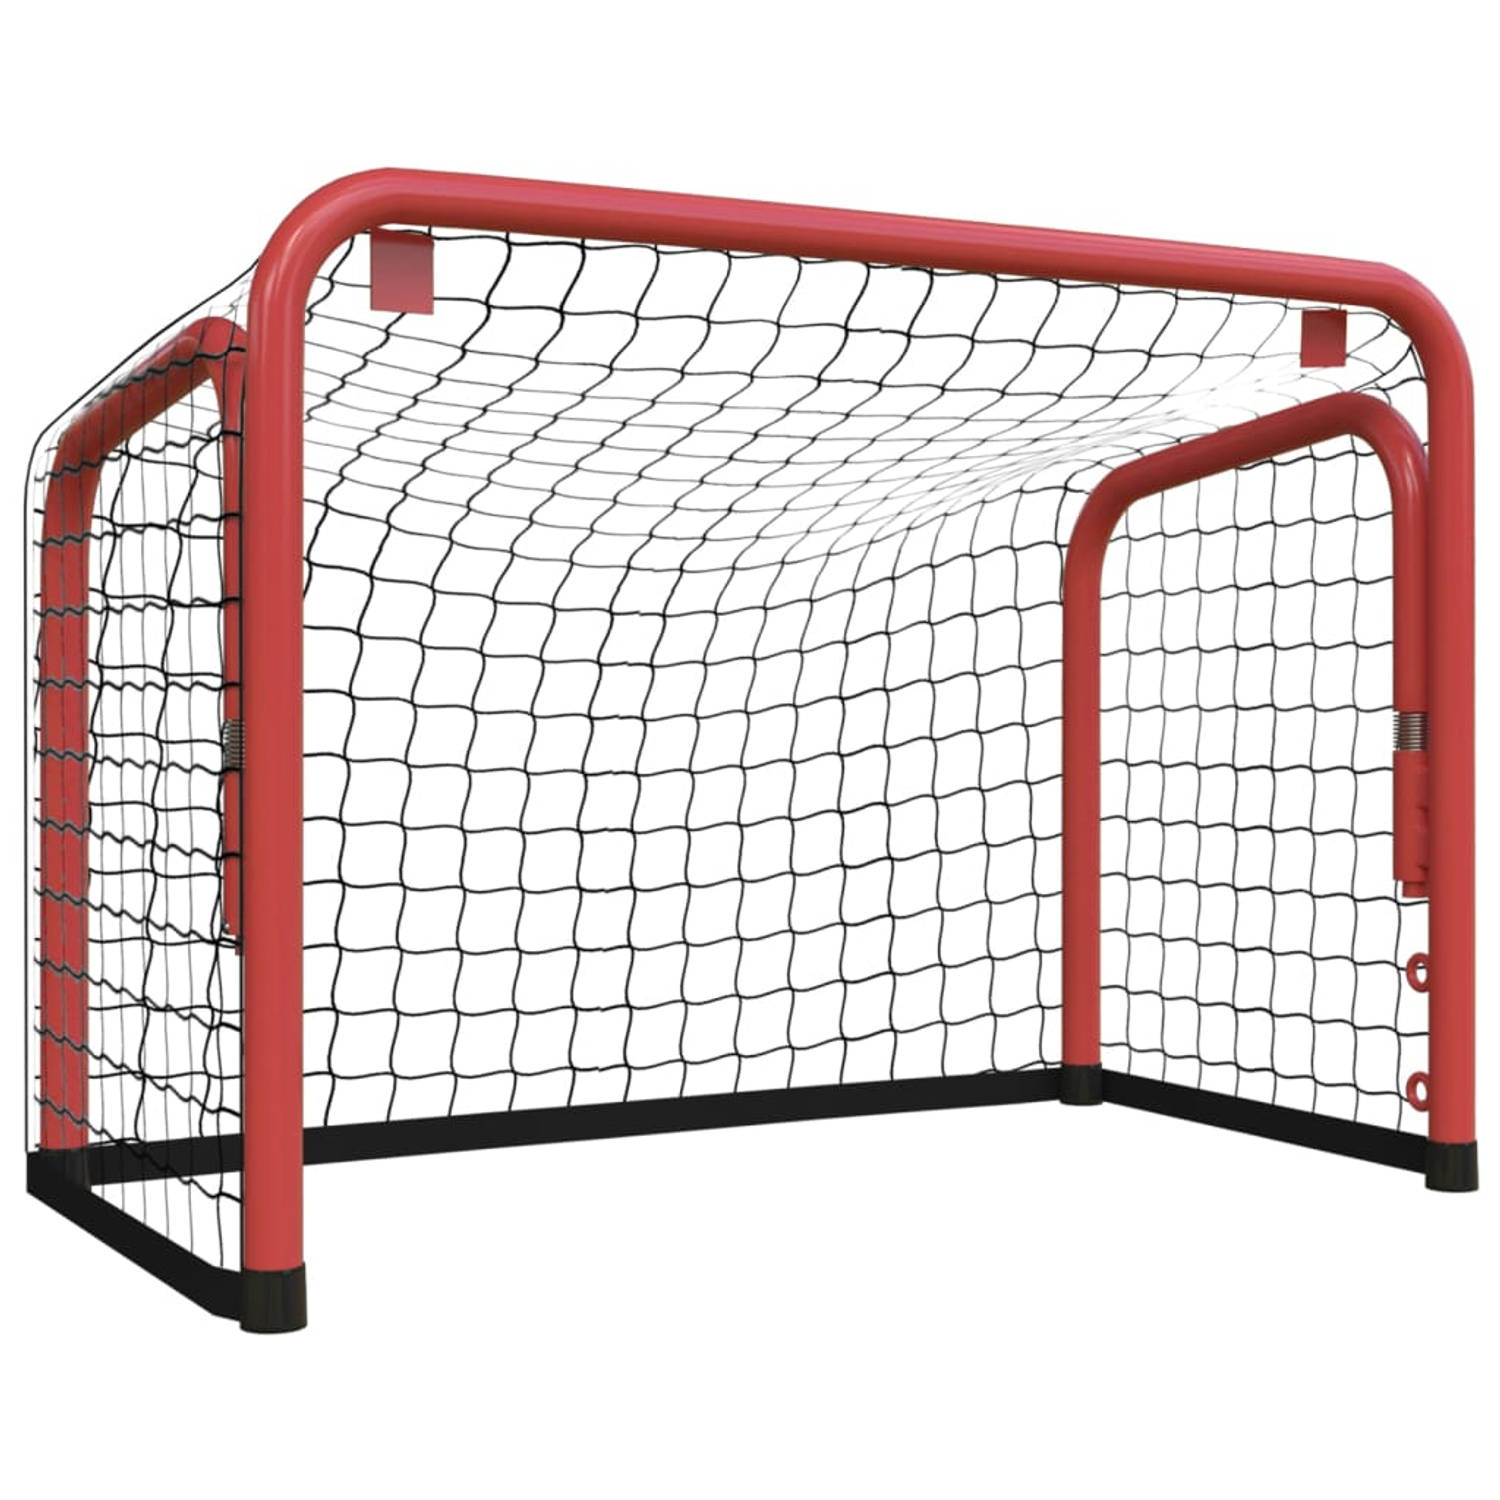 The Living Store Hockeydoel - Duurzaam polyester net - Stabiel stalen frame - Brede toepassingen - Eenvoudige montage - Rood/Zwart (68x32x47 cm)